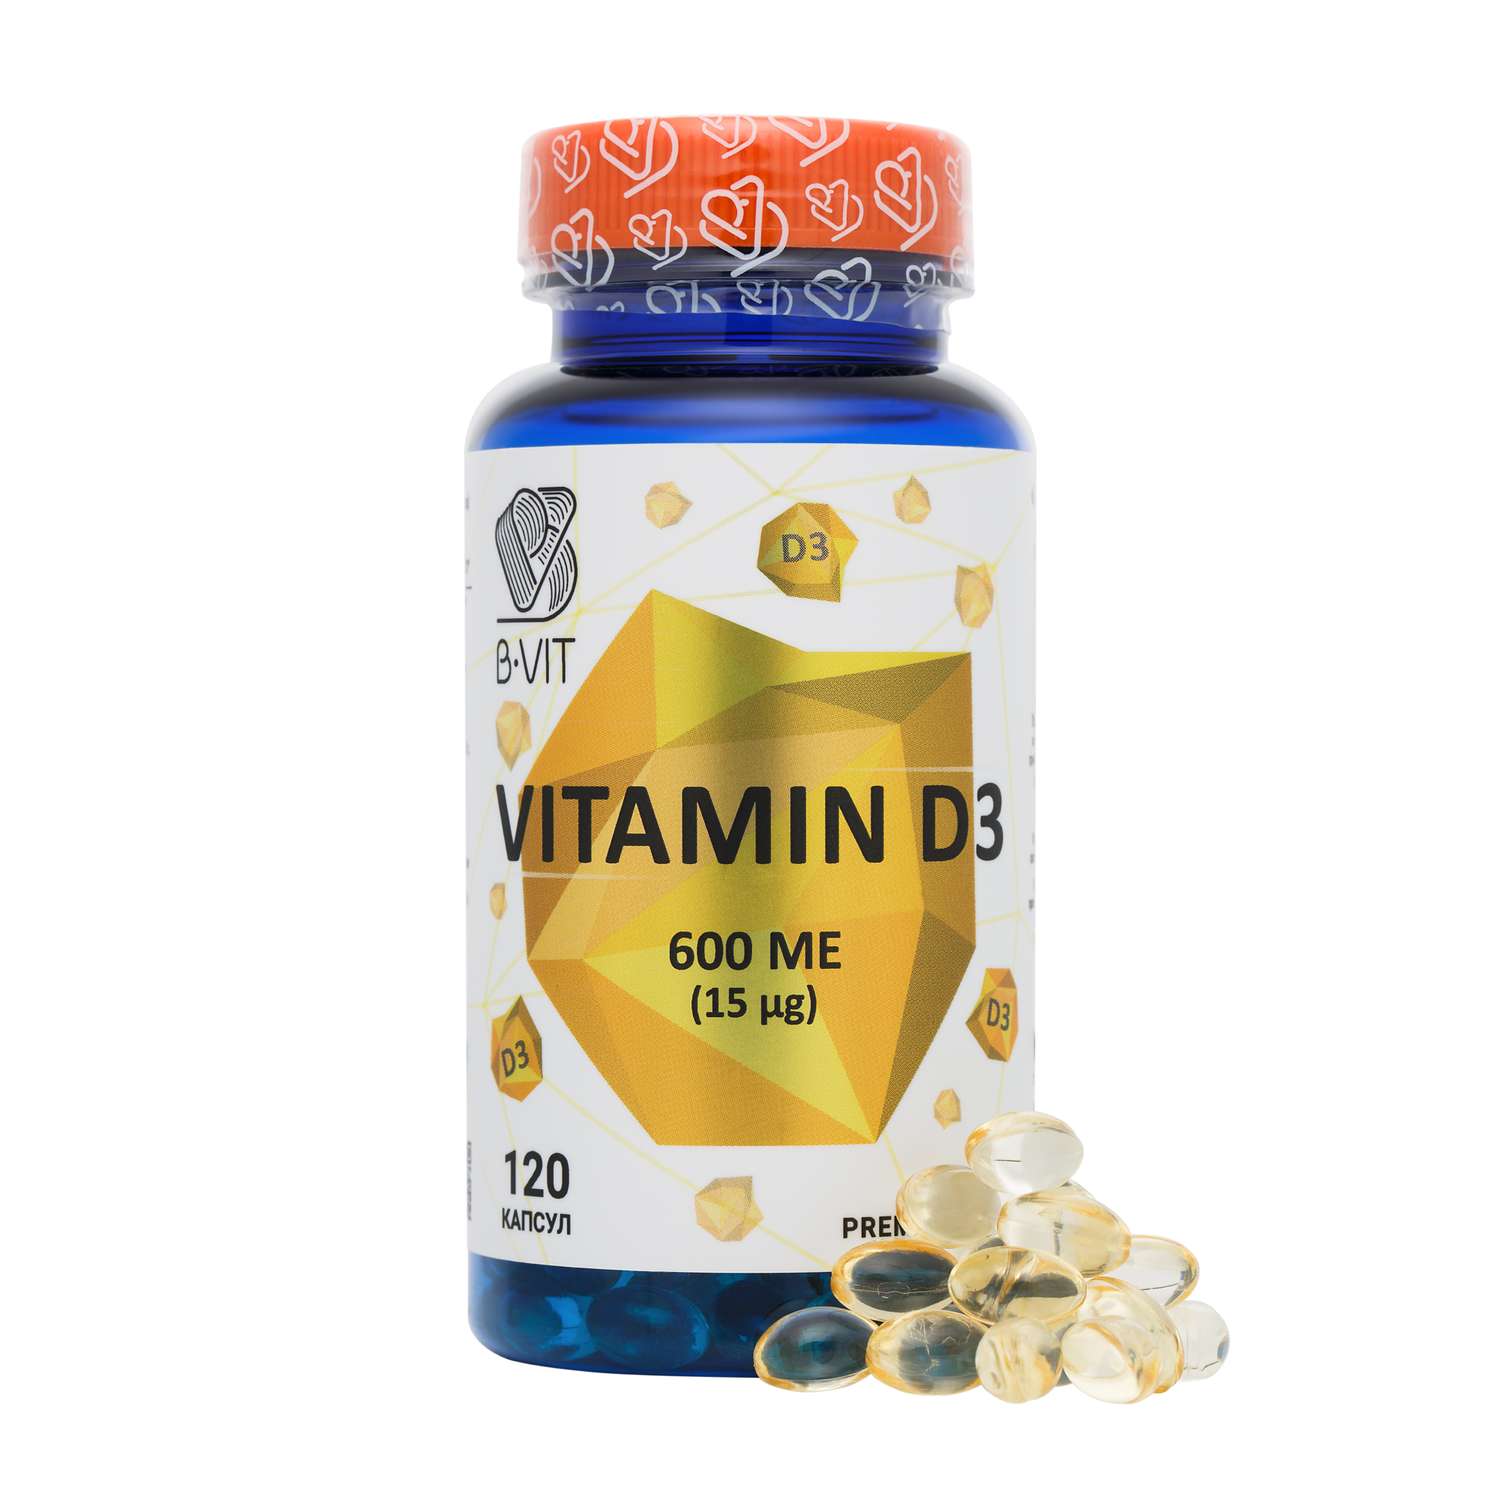 Биологически активная добавка B-VIT Витамин D 3 600 ME 120 капсул - фото 2